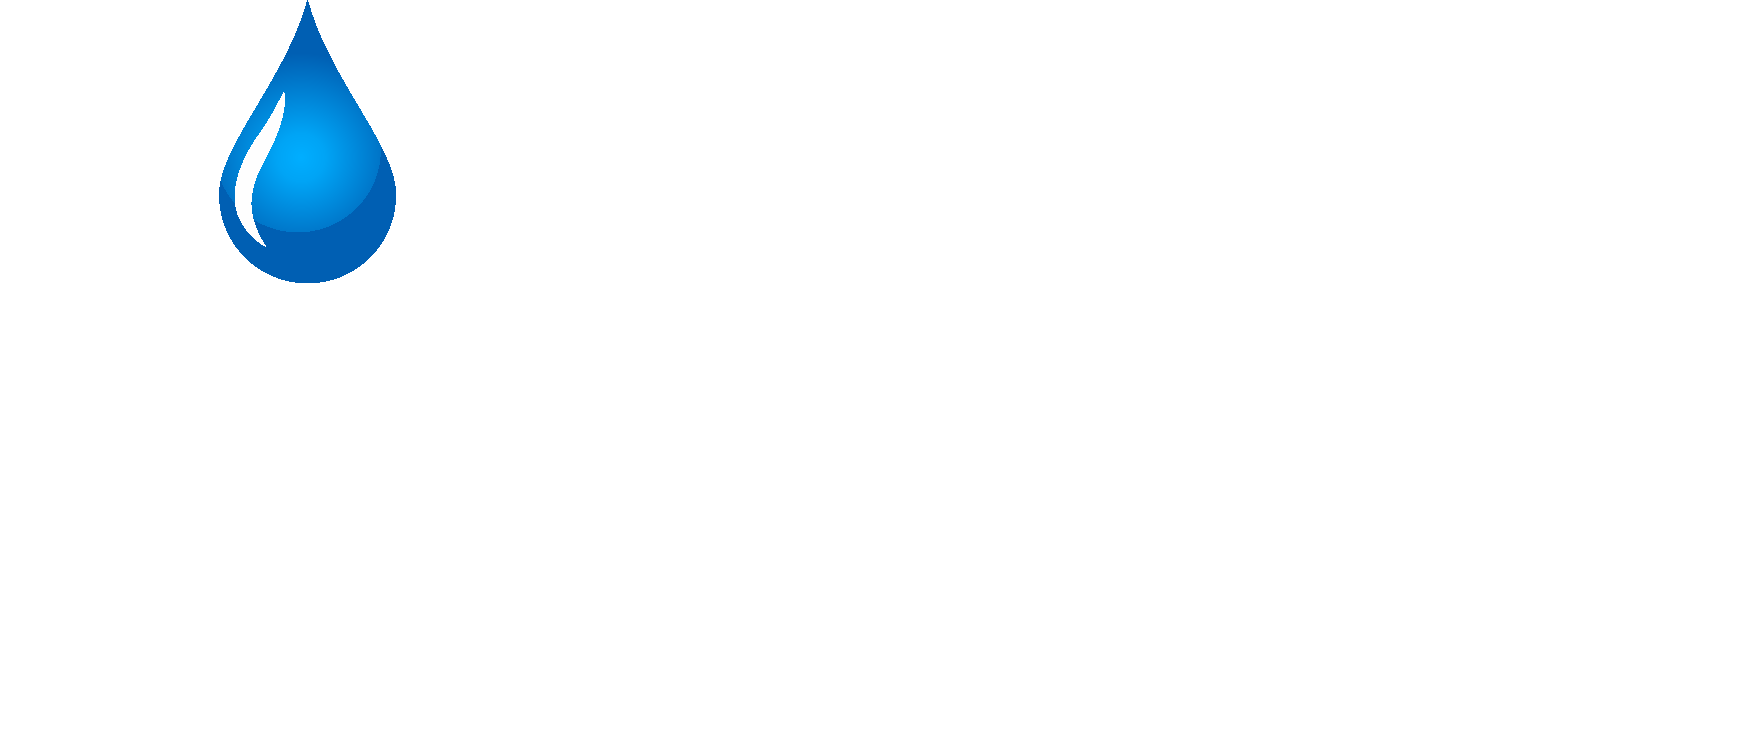 Paramount Plumbing